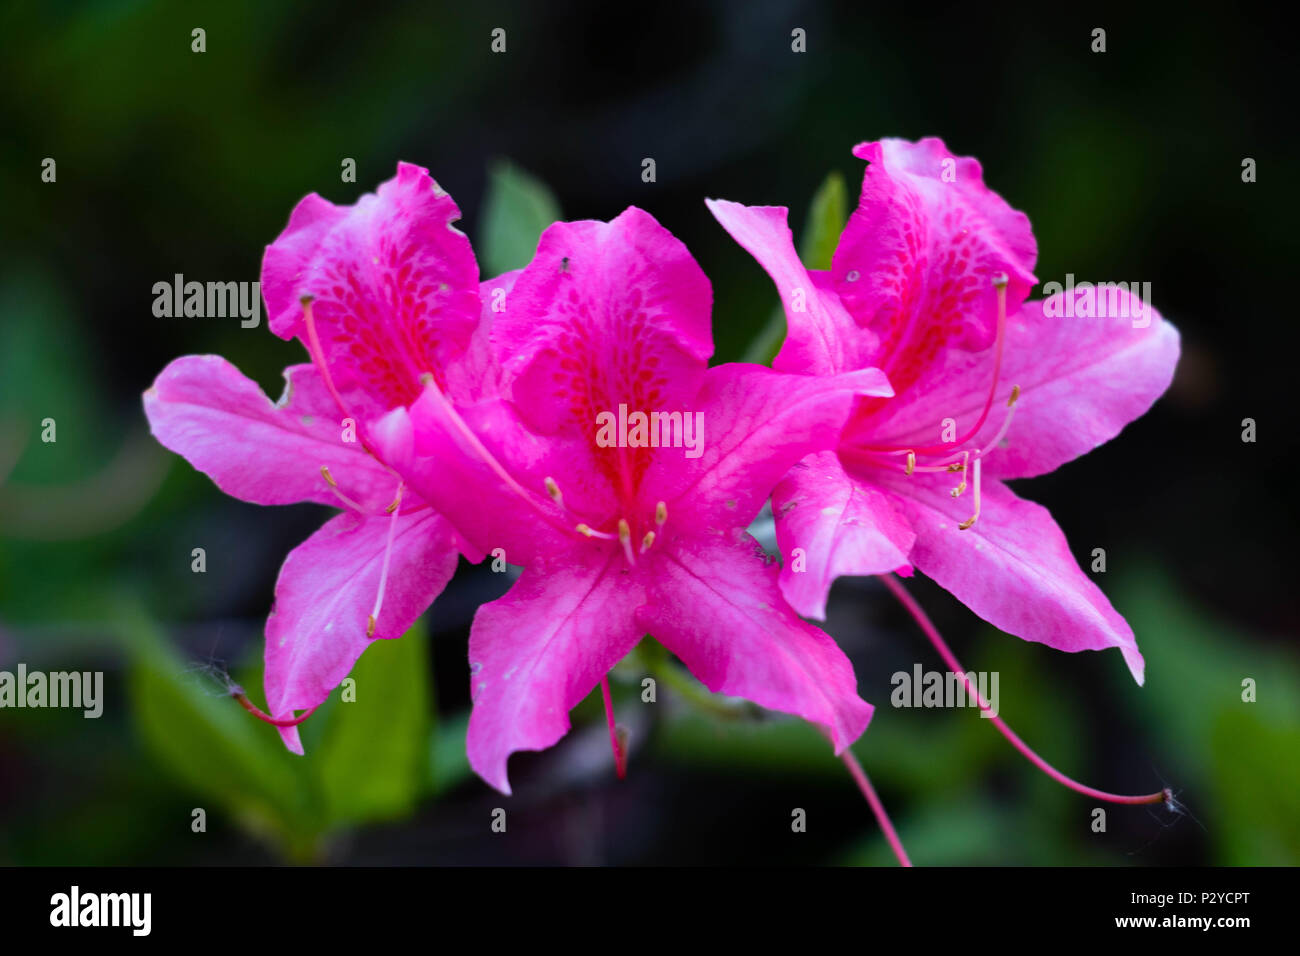 Pink azalea flowers Stock Photo